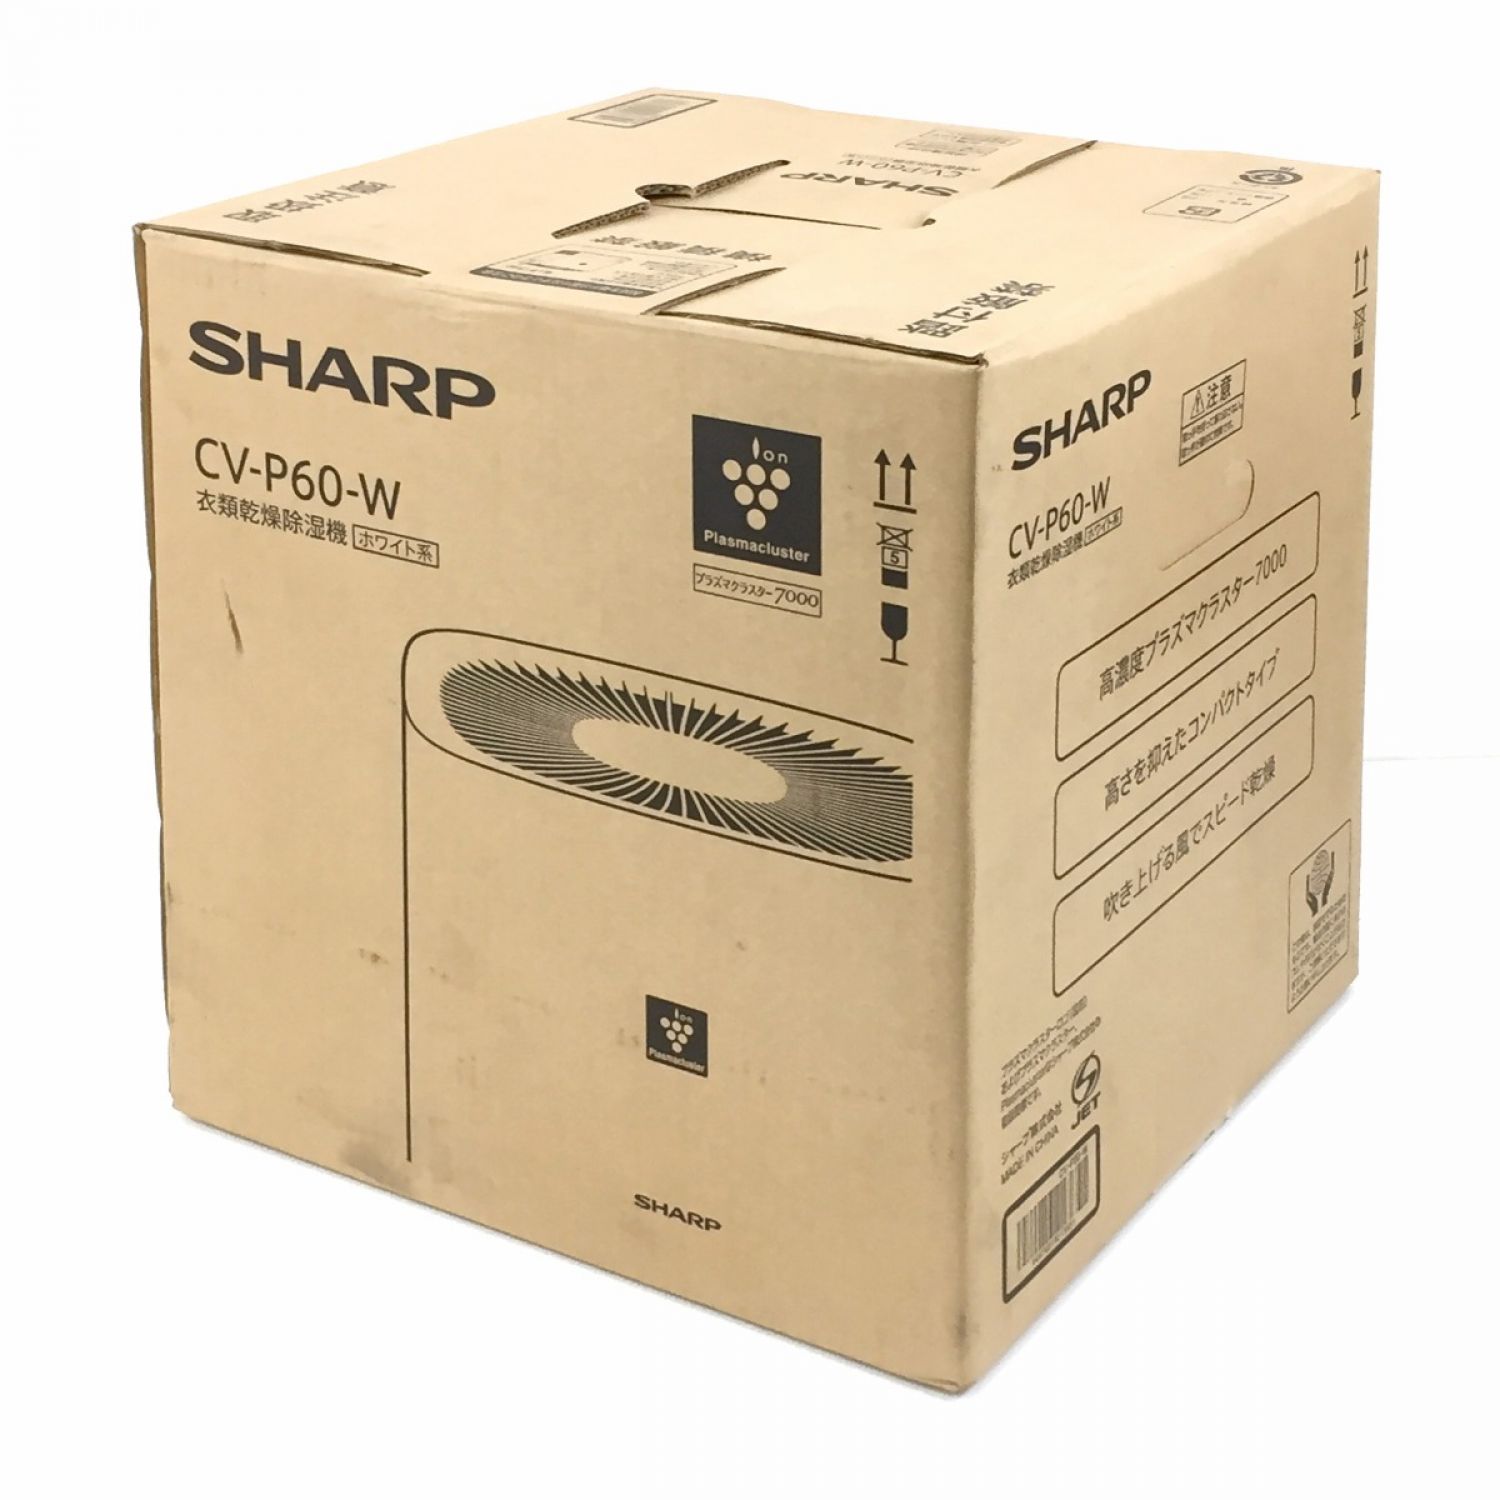 SHARP CV-P60-W WHITE 衣類乾燥除湿機 新品未使用品衣類乾燥除湿機